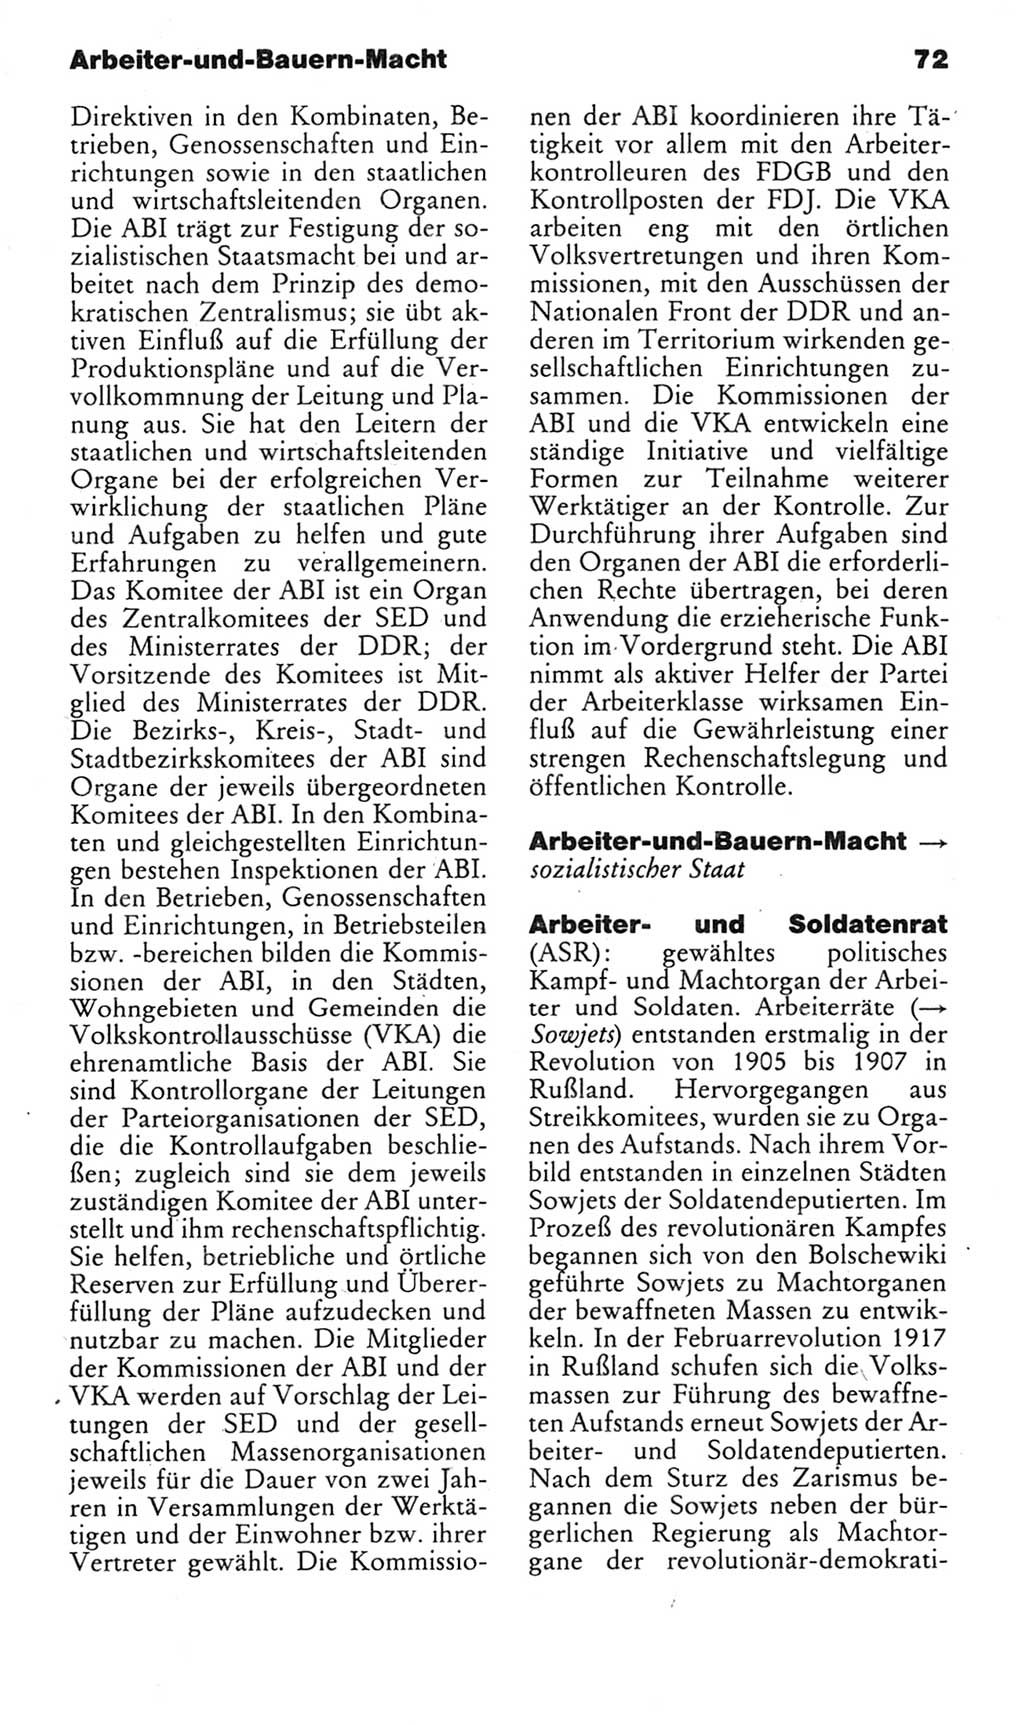 Kleines politisches Wörterbuch [Deutsche Demokratische Republik (DDR)] 1985, Seite 72 (Kl. pol. Wb. DDR 1985, S. 72)